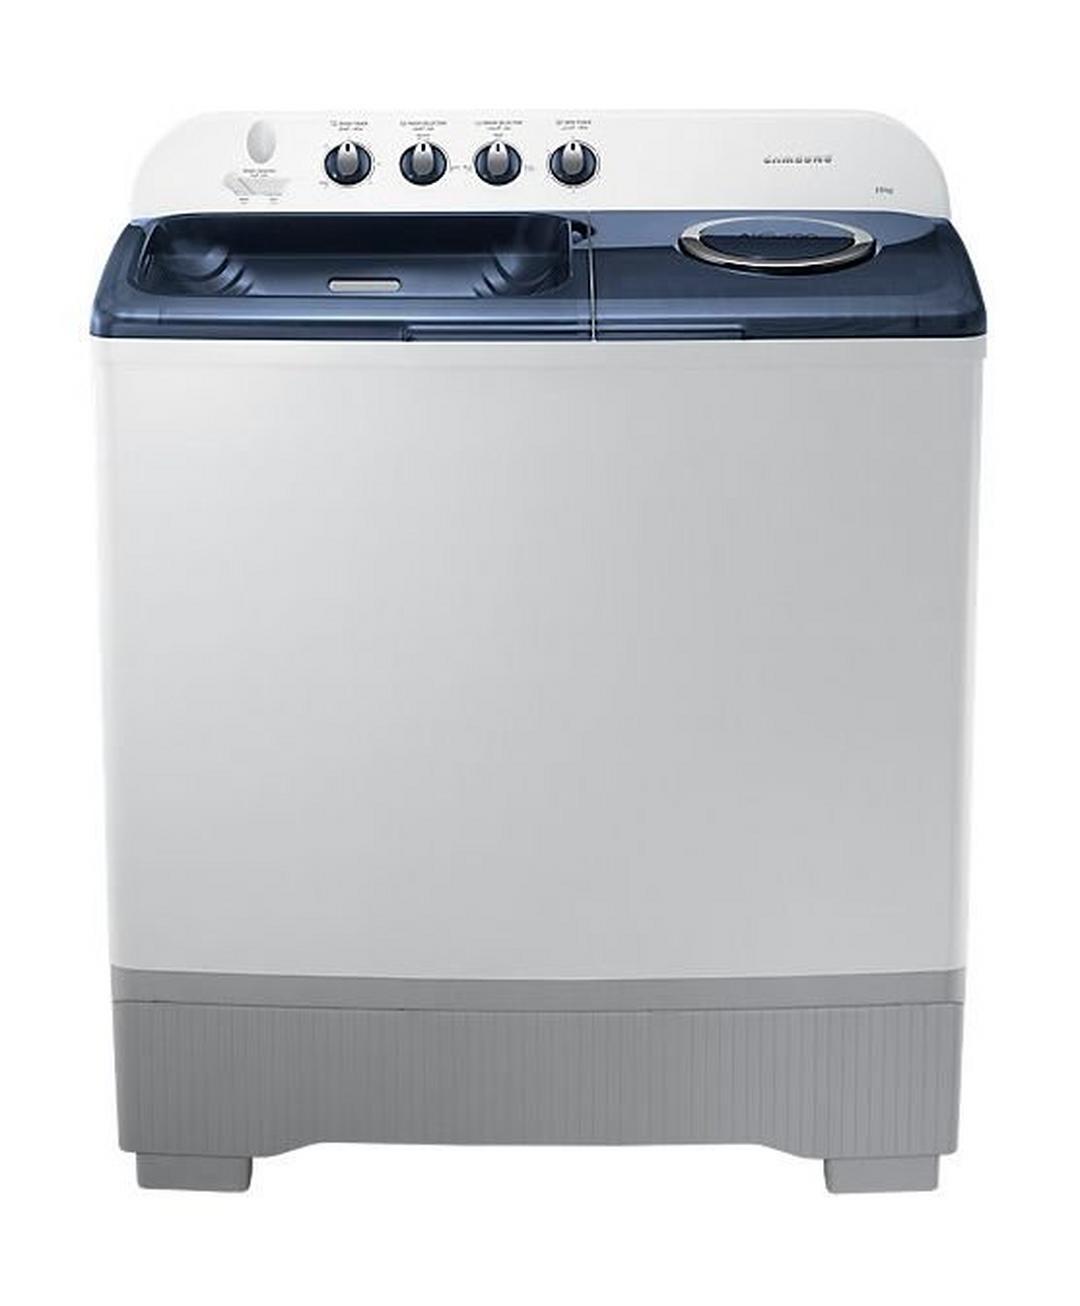 Samsung 15kg Twin Tub Washing Machine (WT15K5200MB) - White